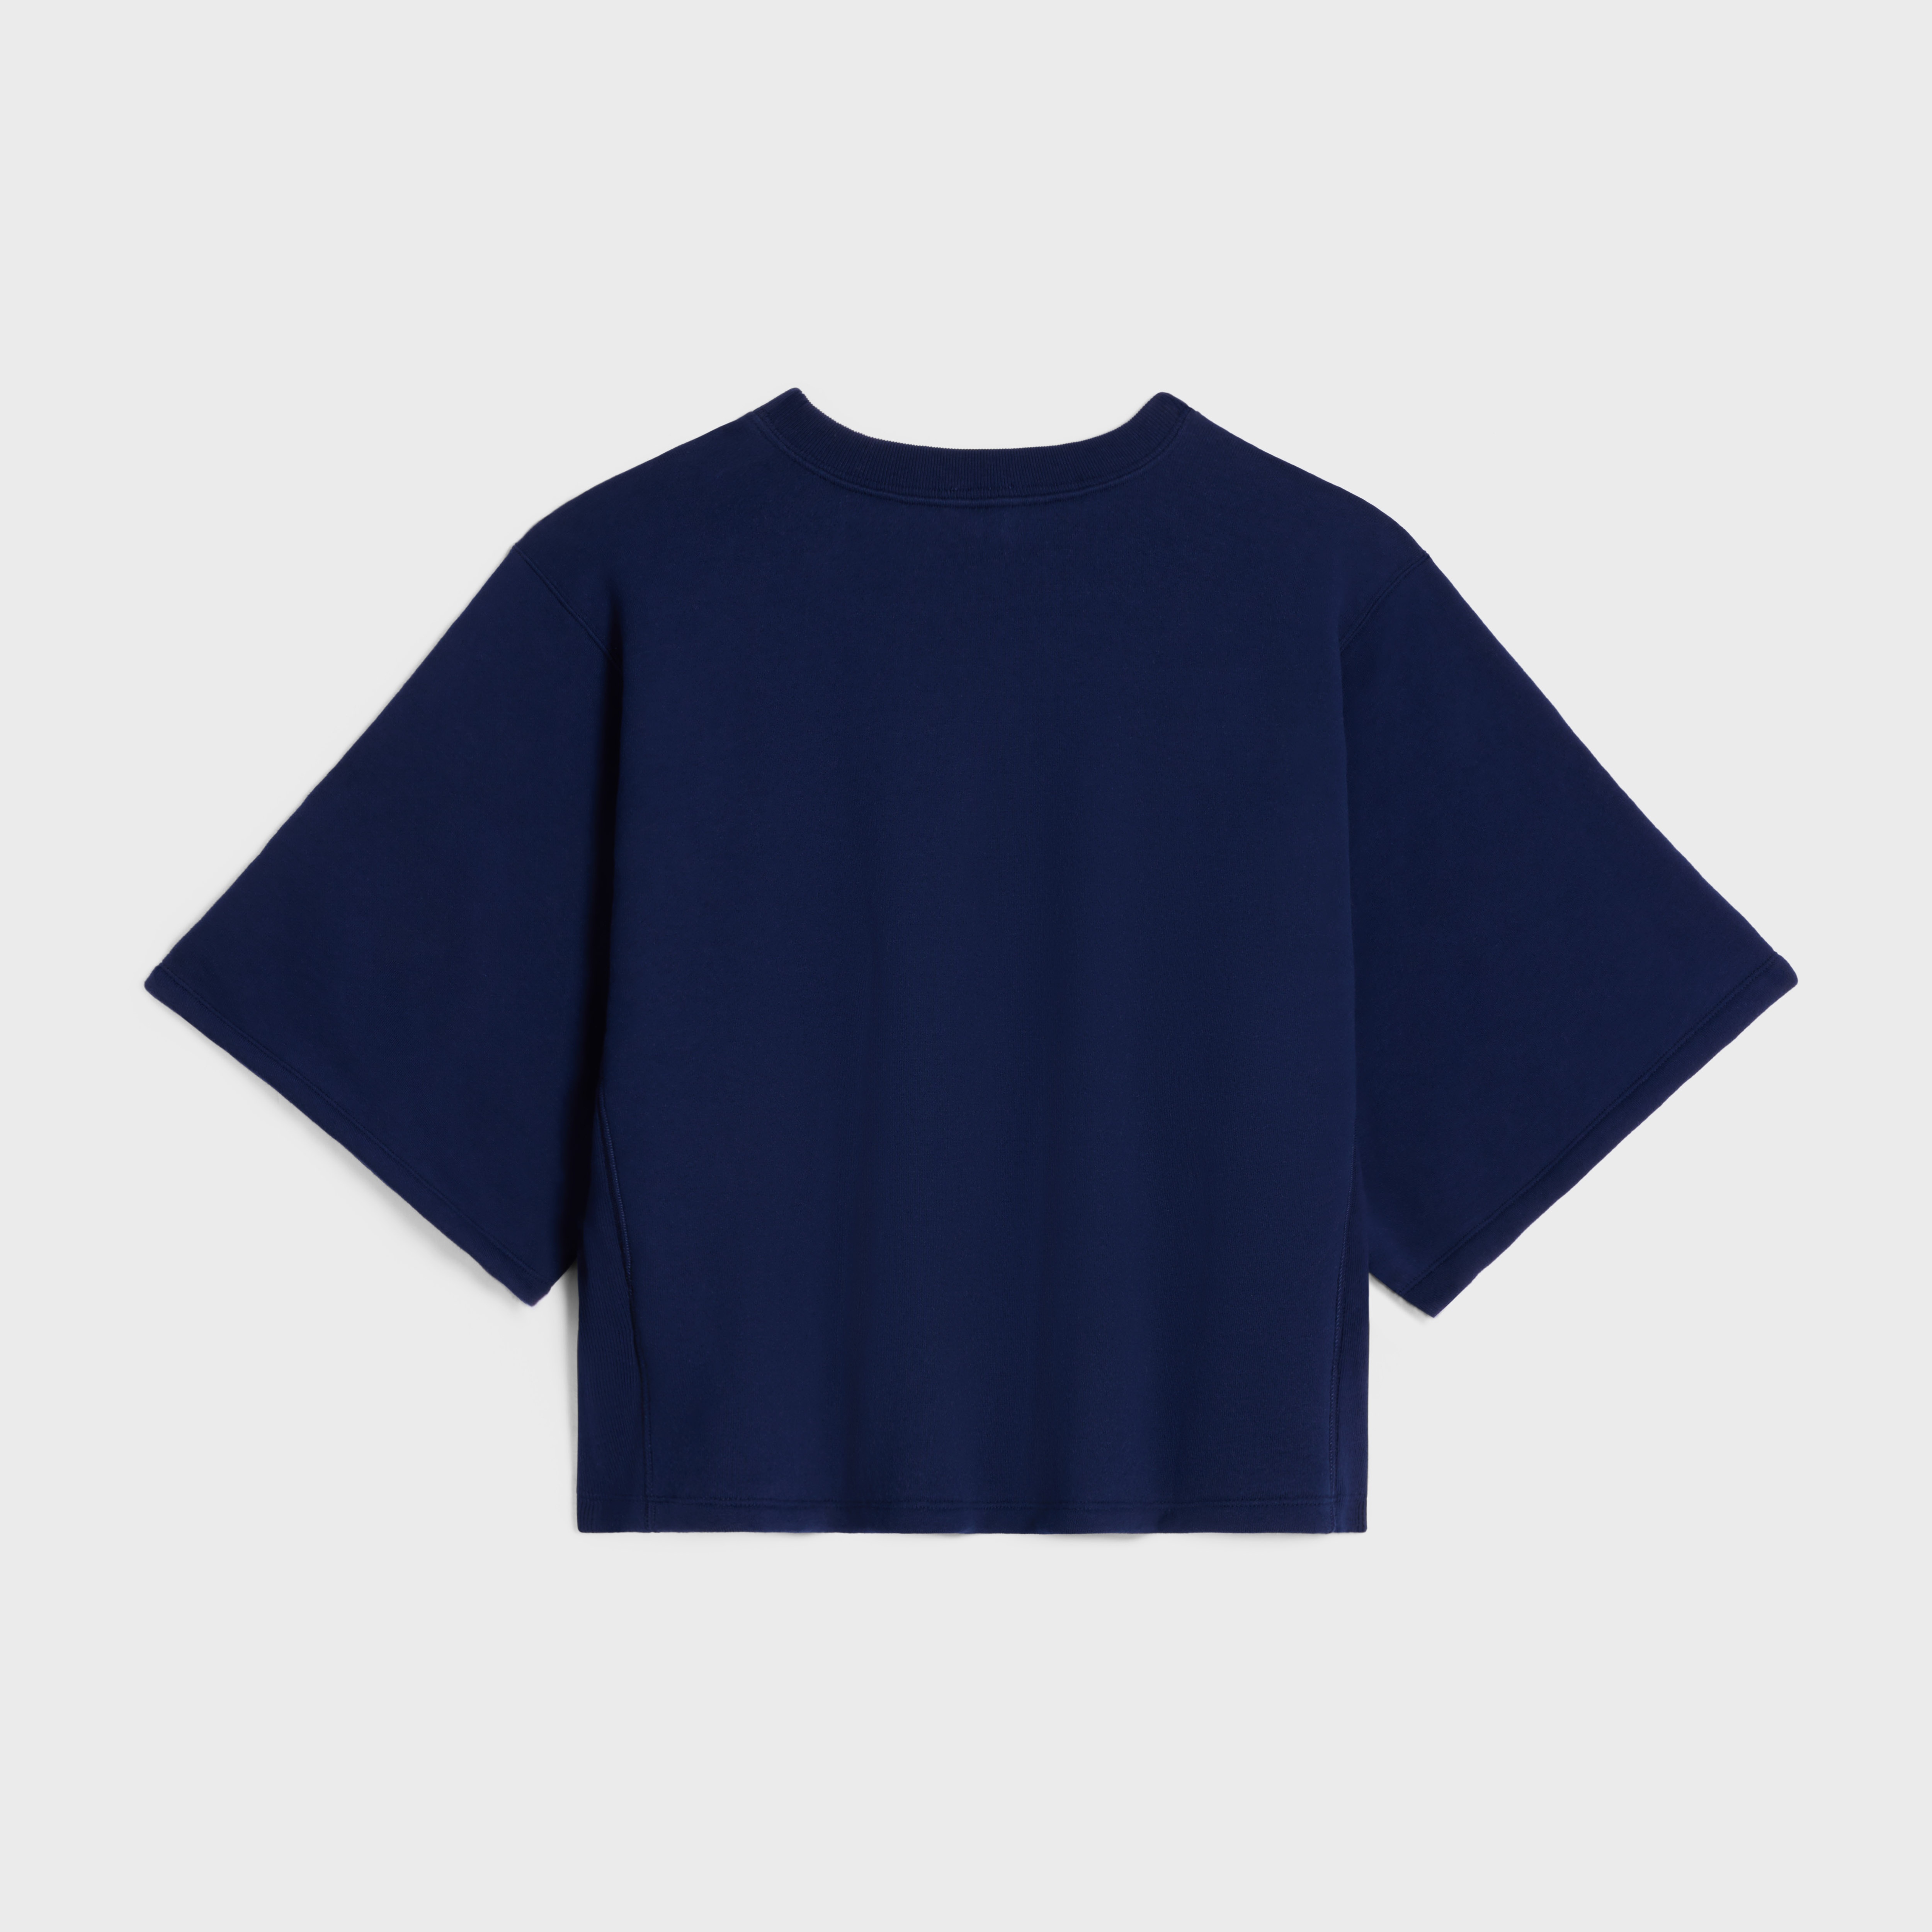 celine paris loose sweatshirt in cotton fleece - 2